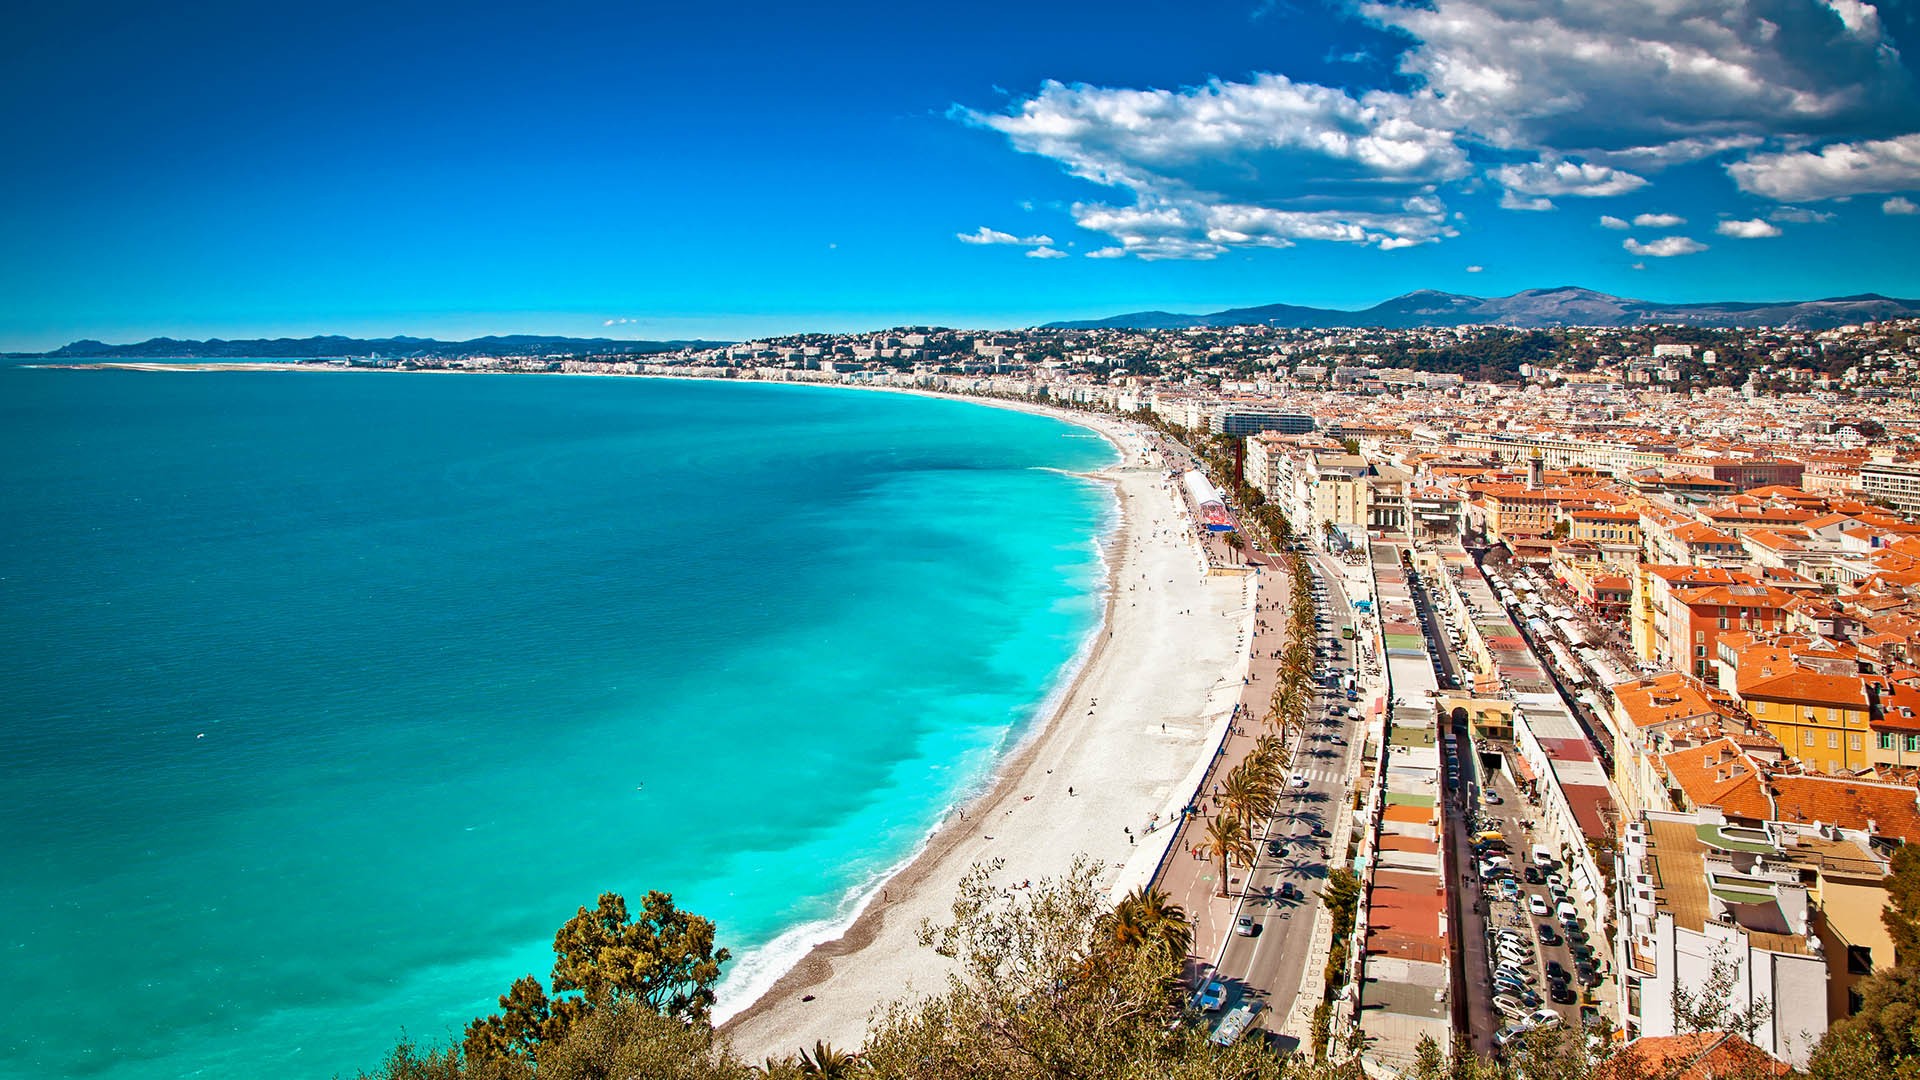 La ville de Nice classée patrimoine mondial de l’Unesco